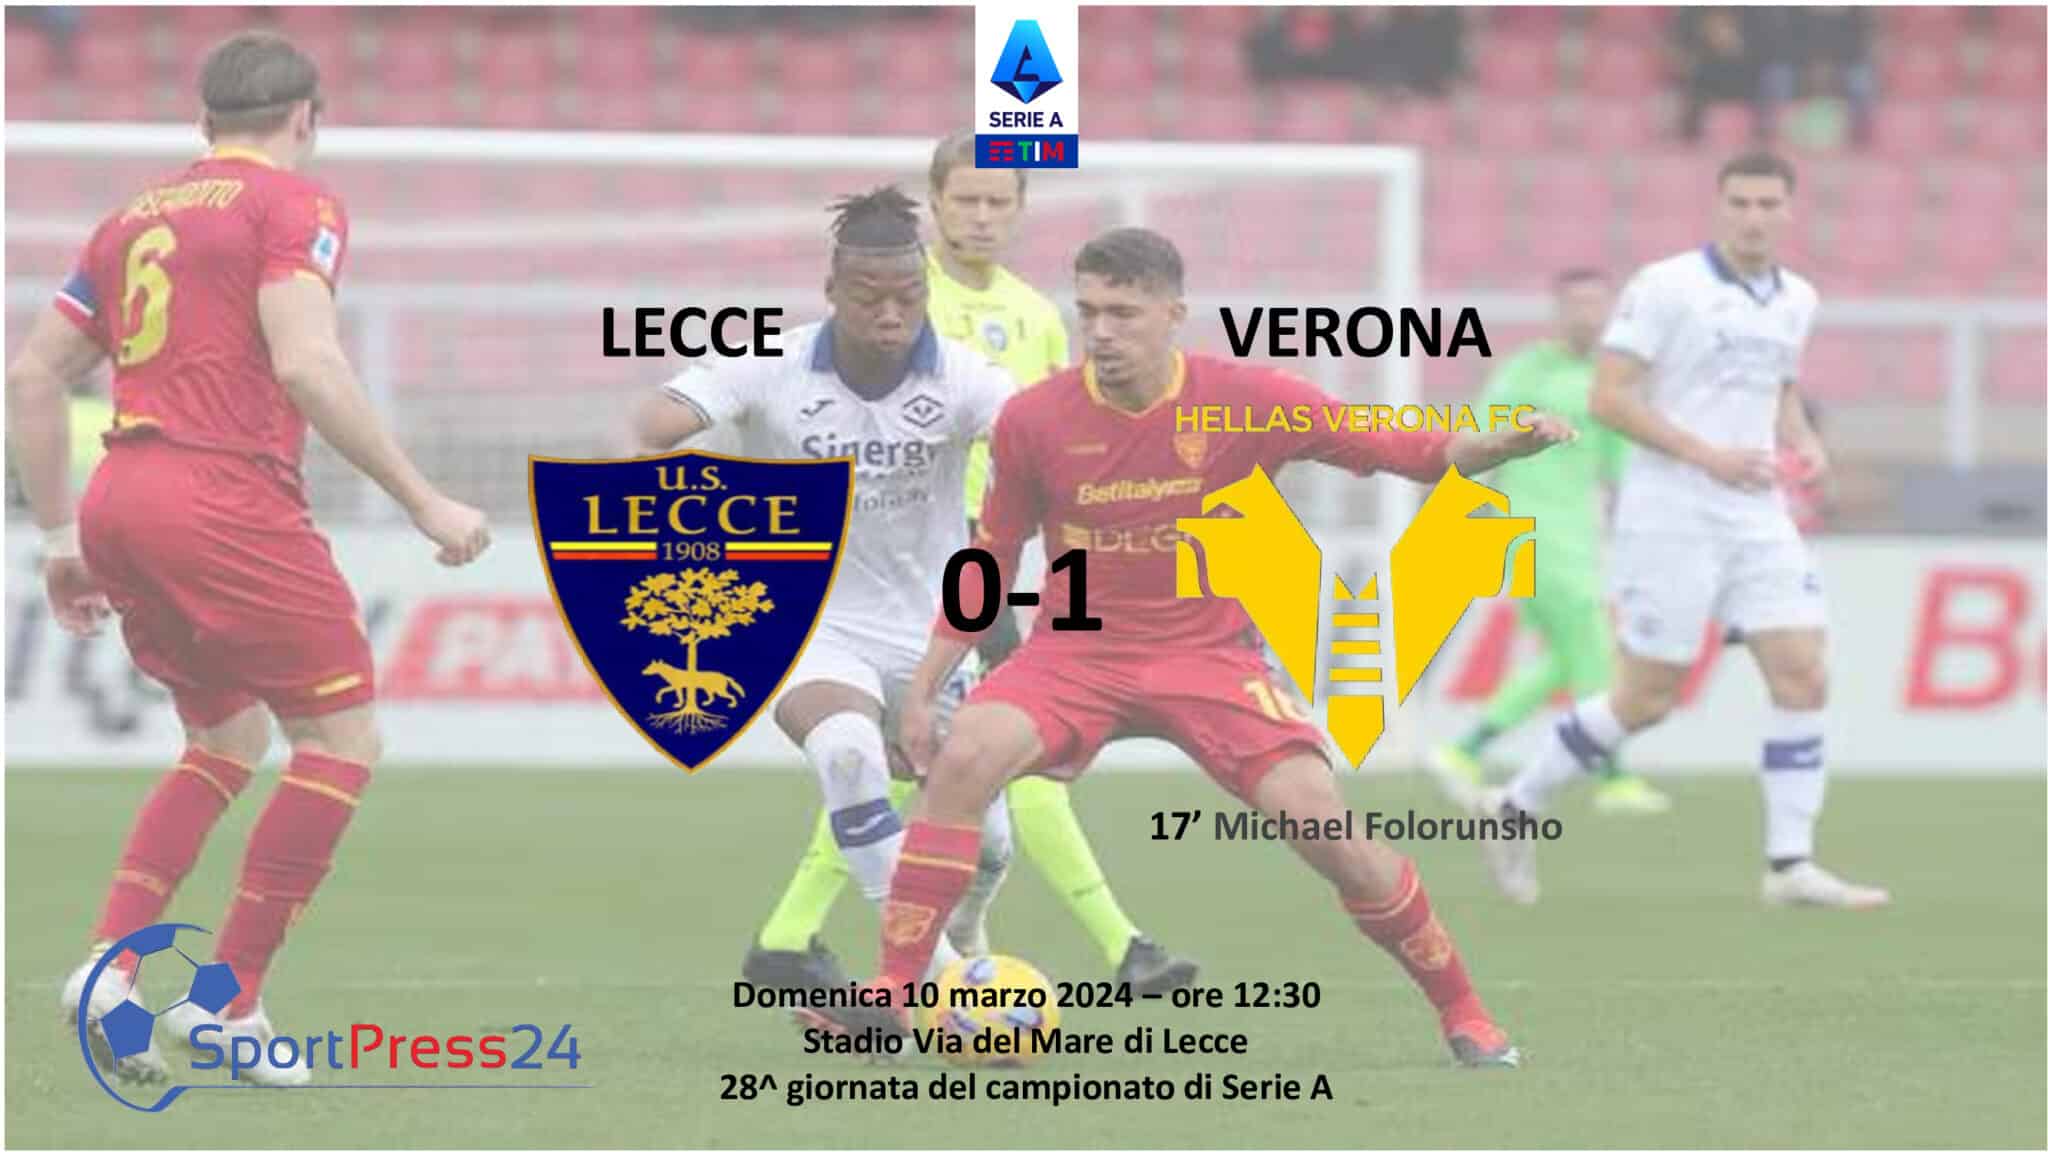 Le pagelle di Lecce Verona (Immagine a cura di Sportpress24.com)